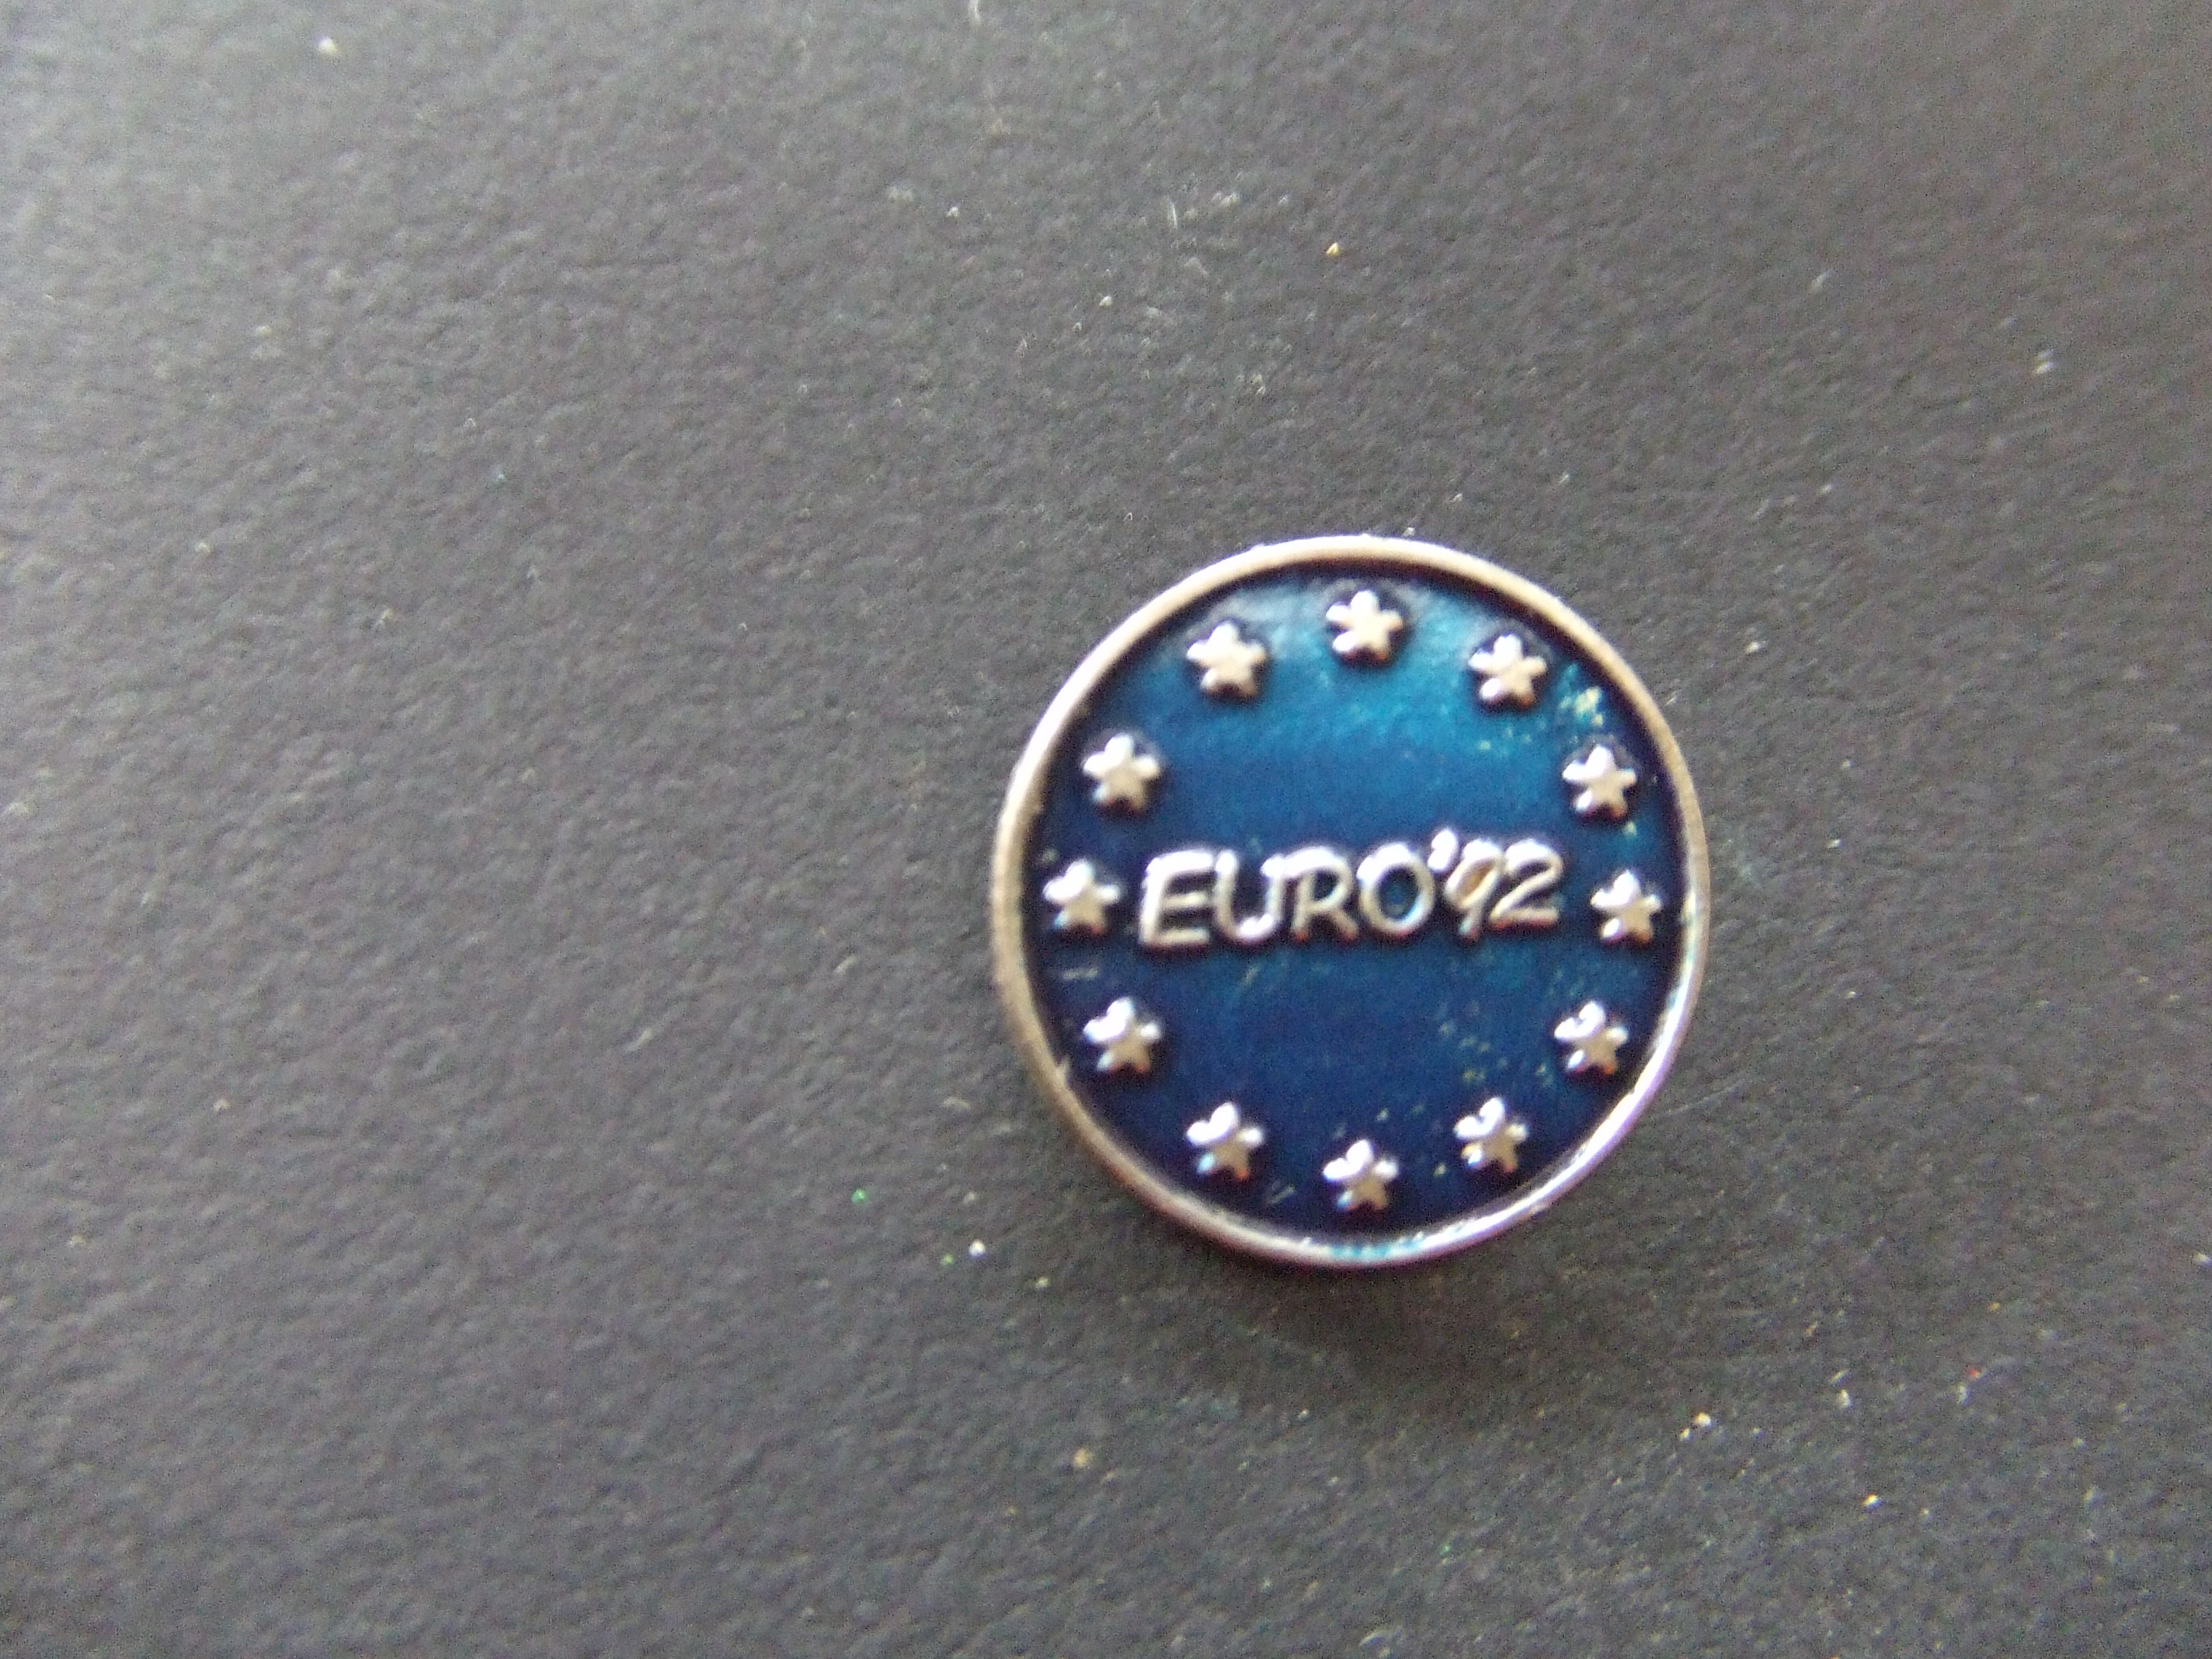 Euro'92